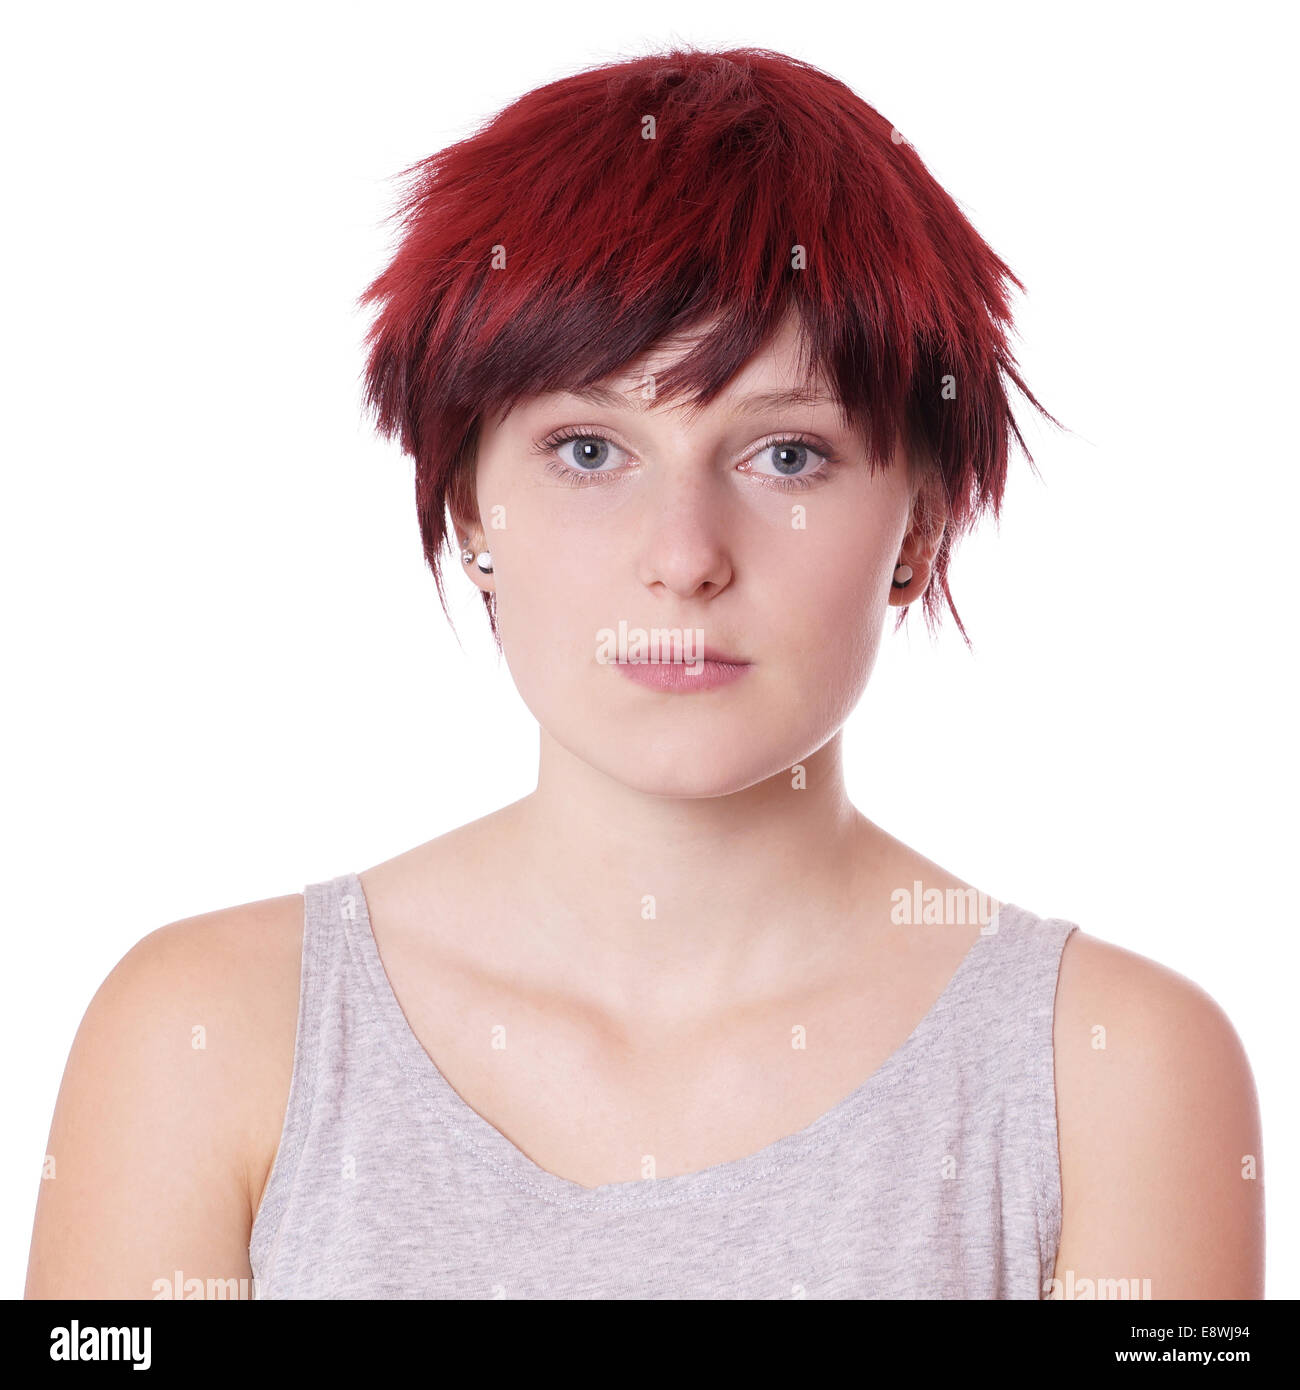 junge Frau mit kurzen roten Haaren Stockfoto